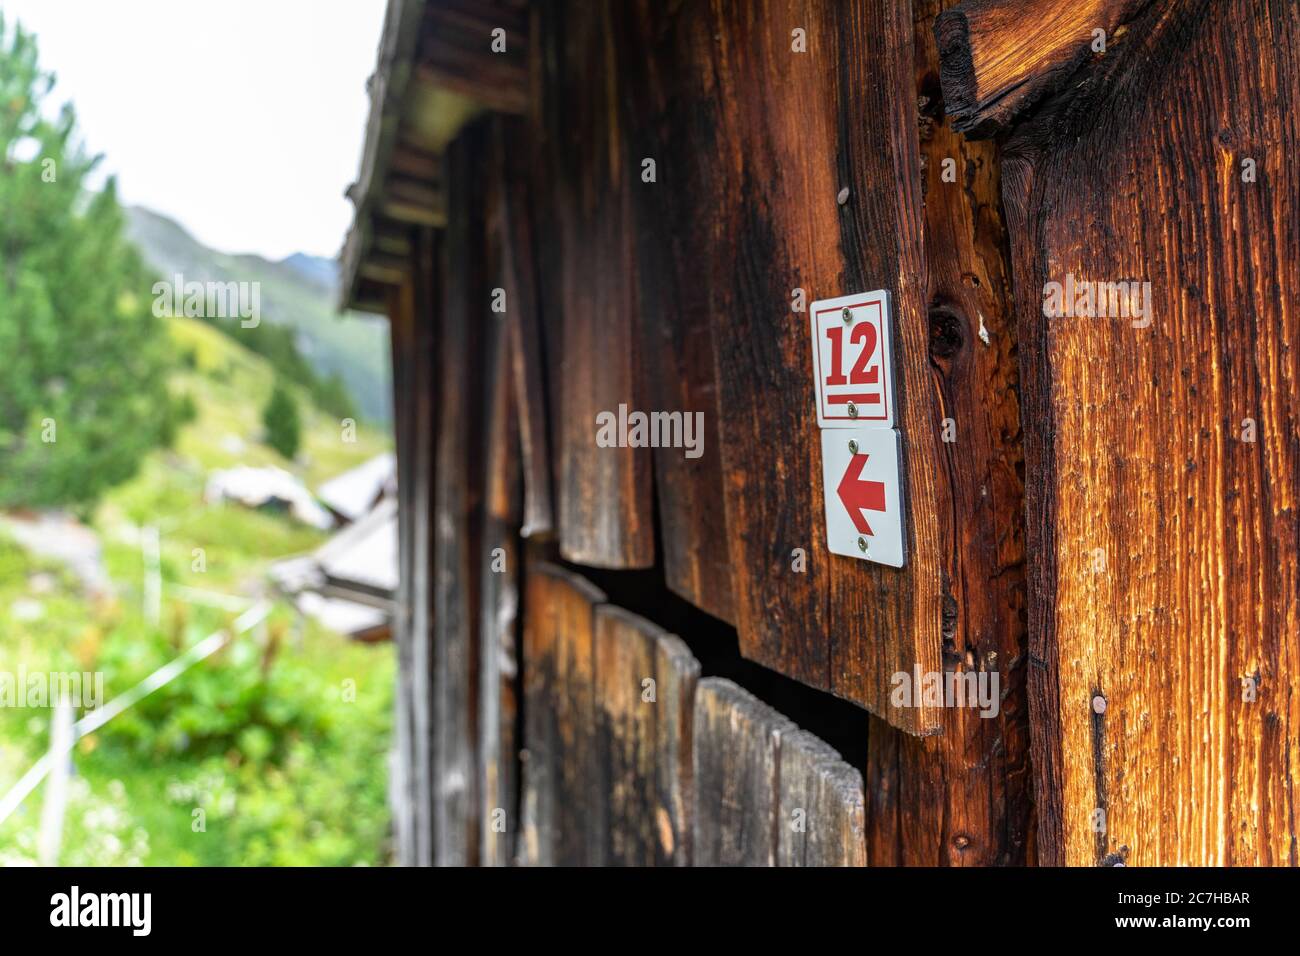 Europa, Österreich, Tirol, Ötztal Alpen, Ötztal, Wegweiser des Ötztaler Urweges bei einer Holzhütte Stockfoto